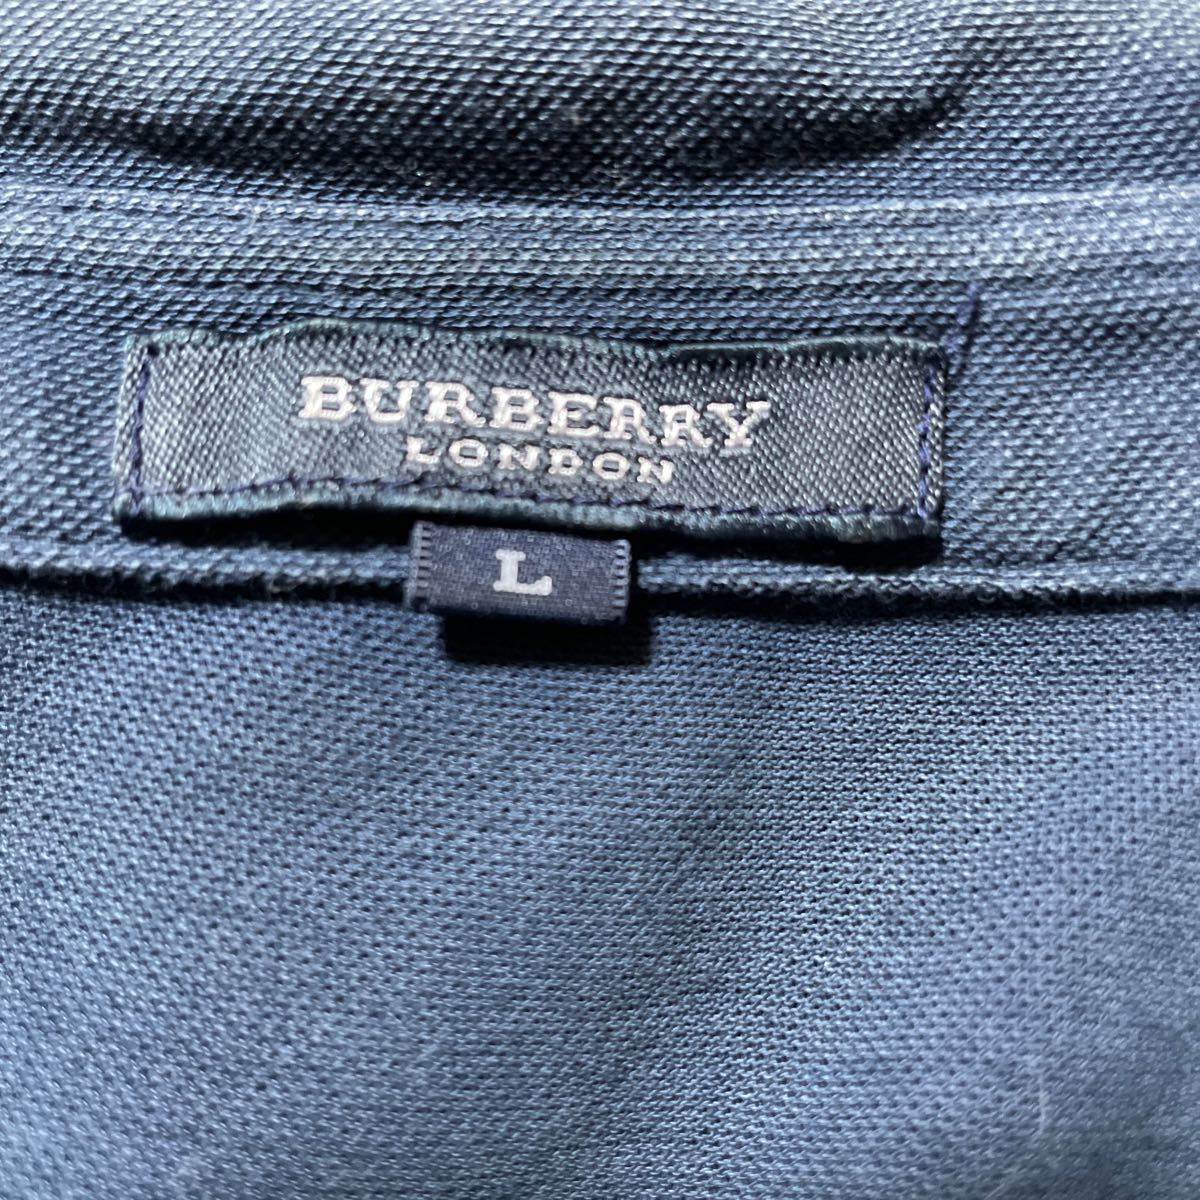 BURBERRY LONDON рубашка-поло с коротким рукавом L размер 